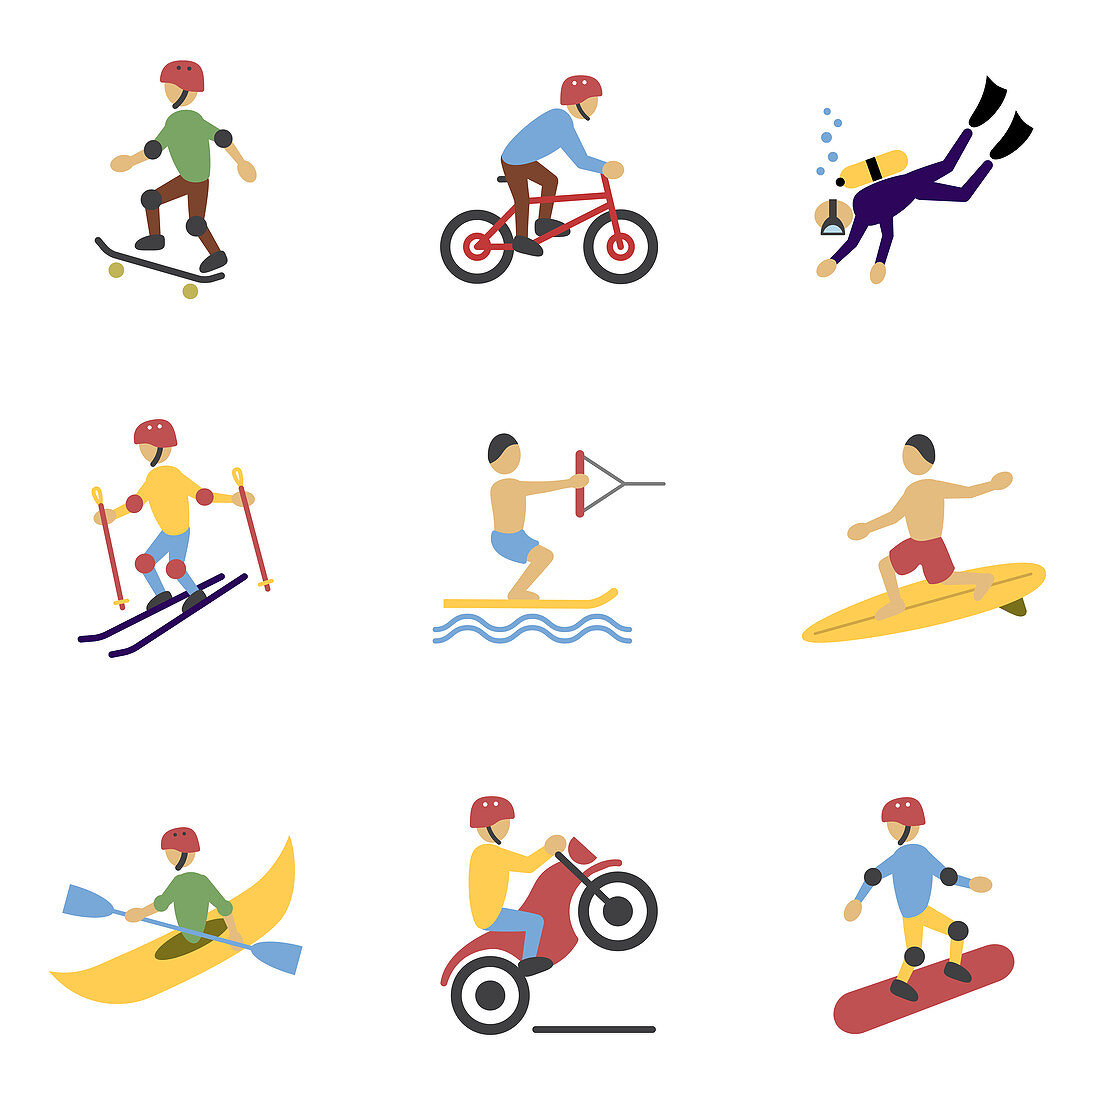 Extreme sports icons, illustration